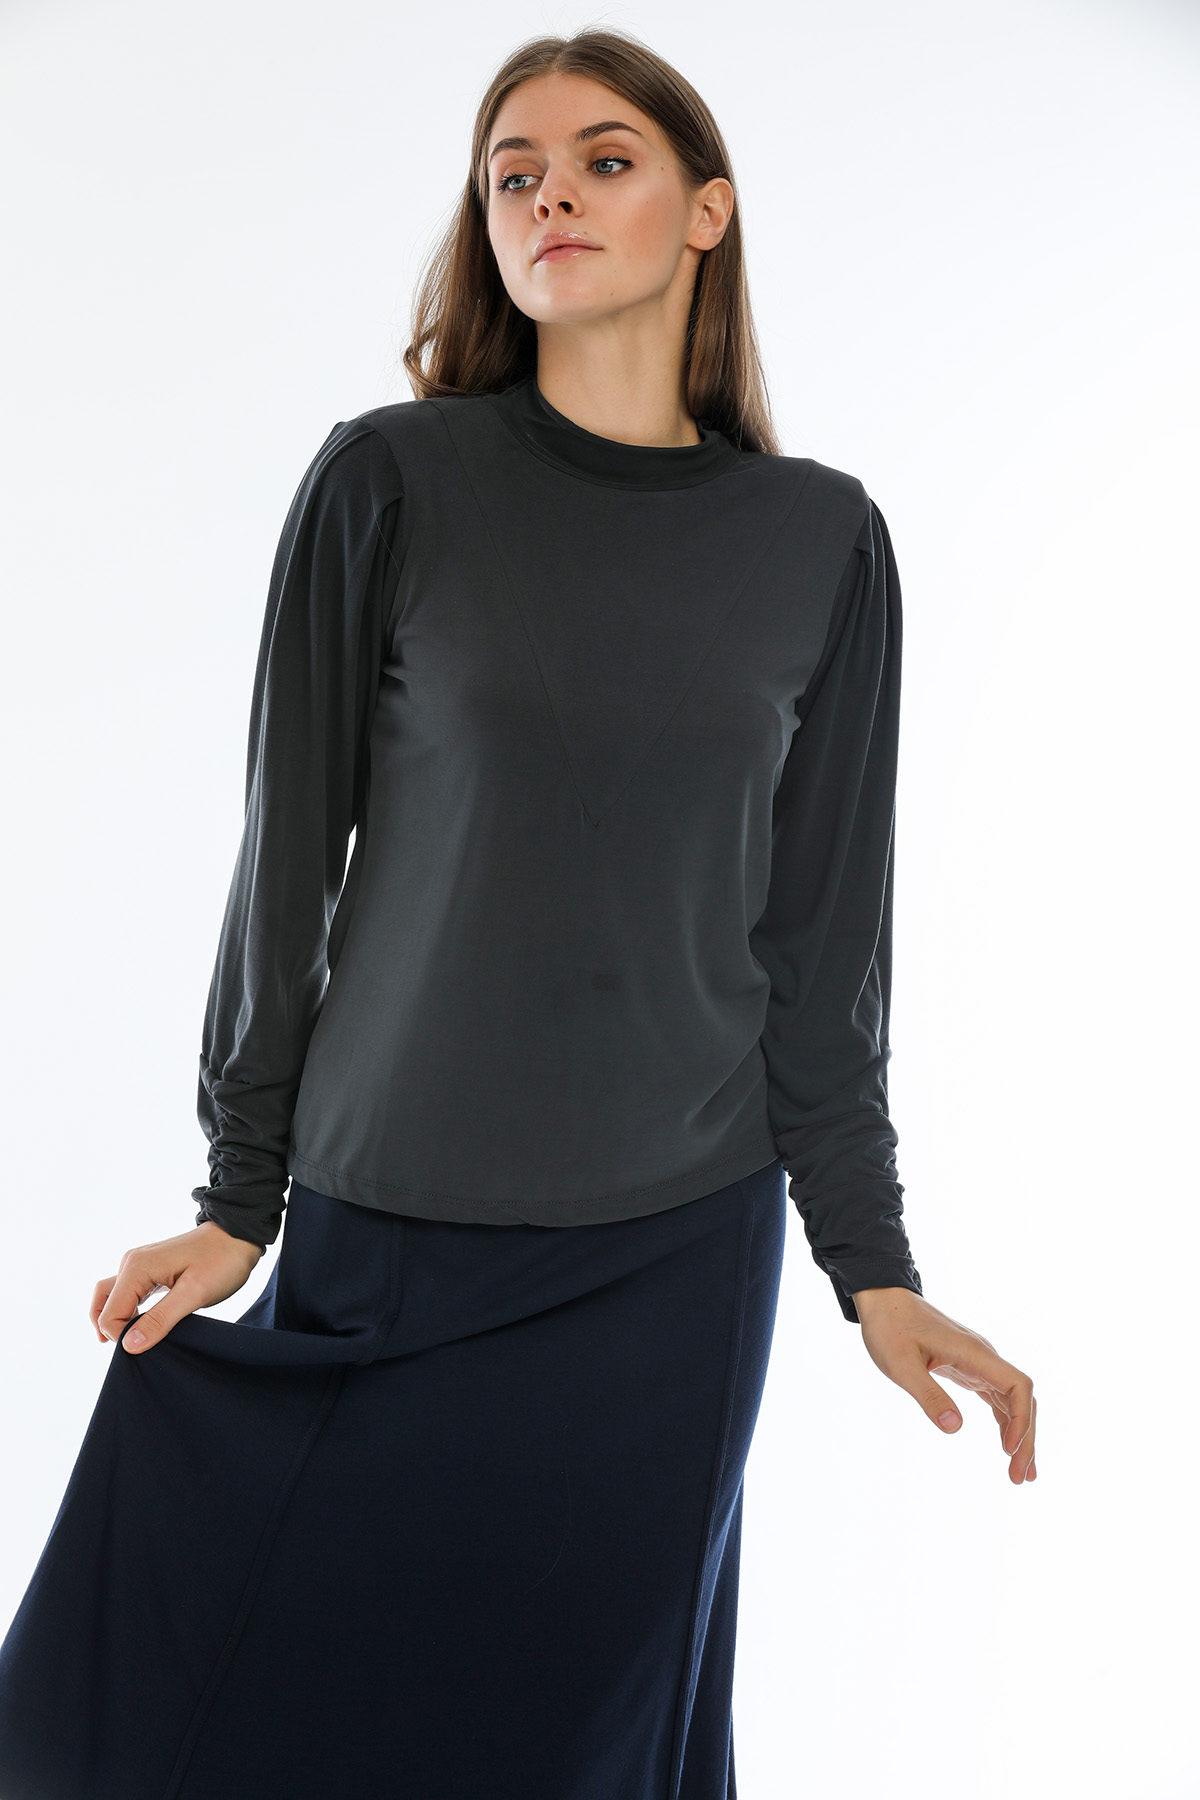 Perla Blanca Omuz Vatkalı Kollar Büzgülü Lacivert Modal Bluz